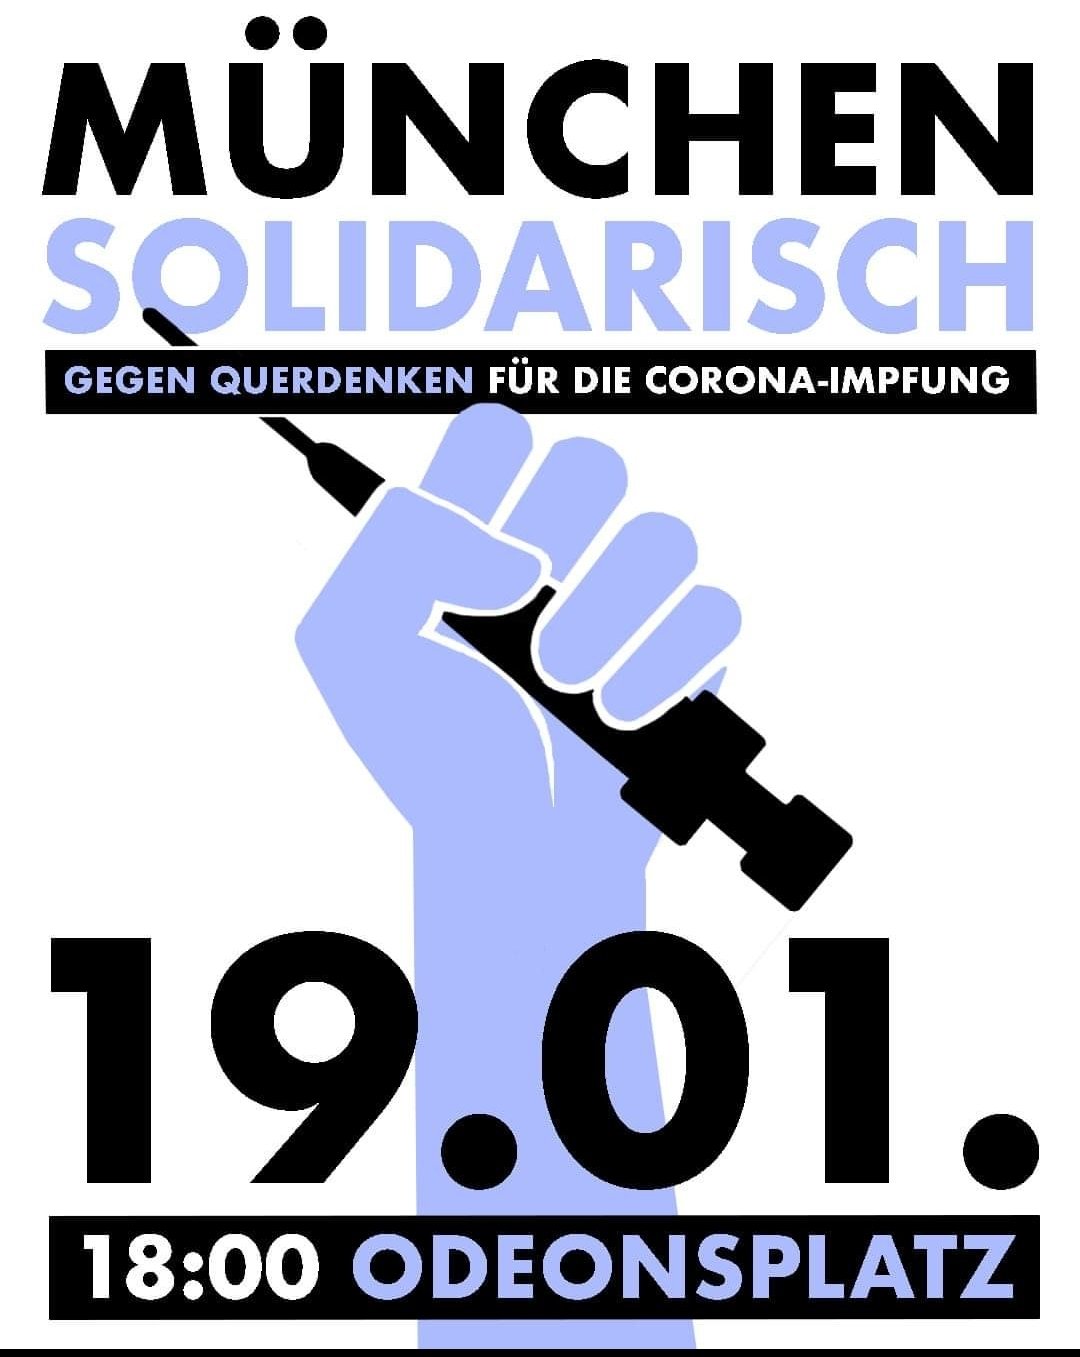 München solidarisch - Gegen Querdenken